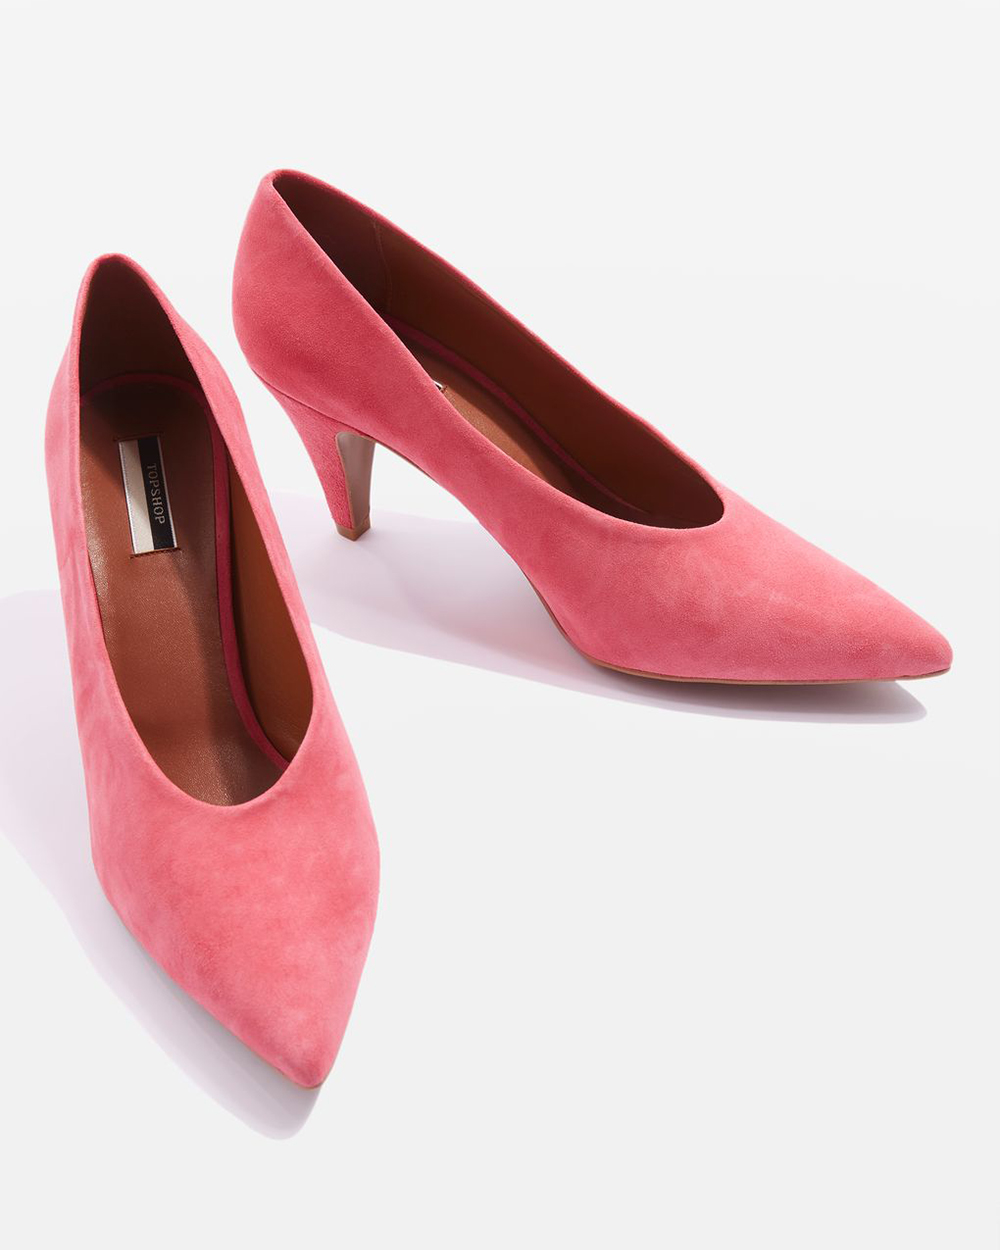 Topshop heels, $111